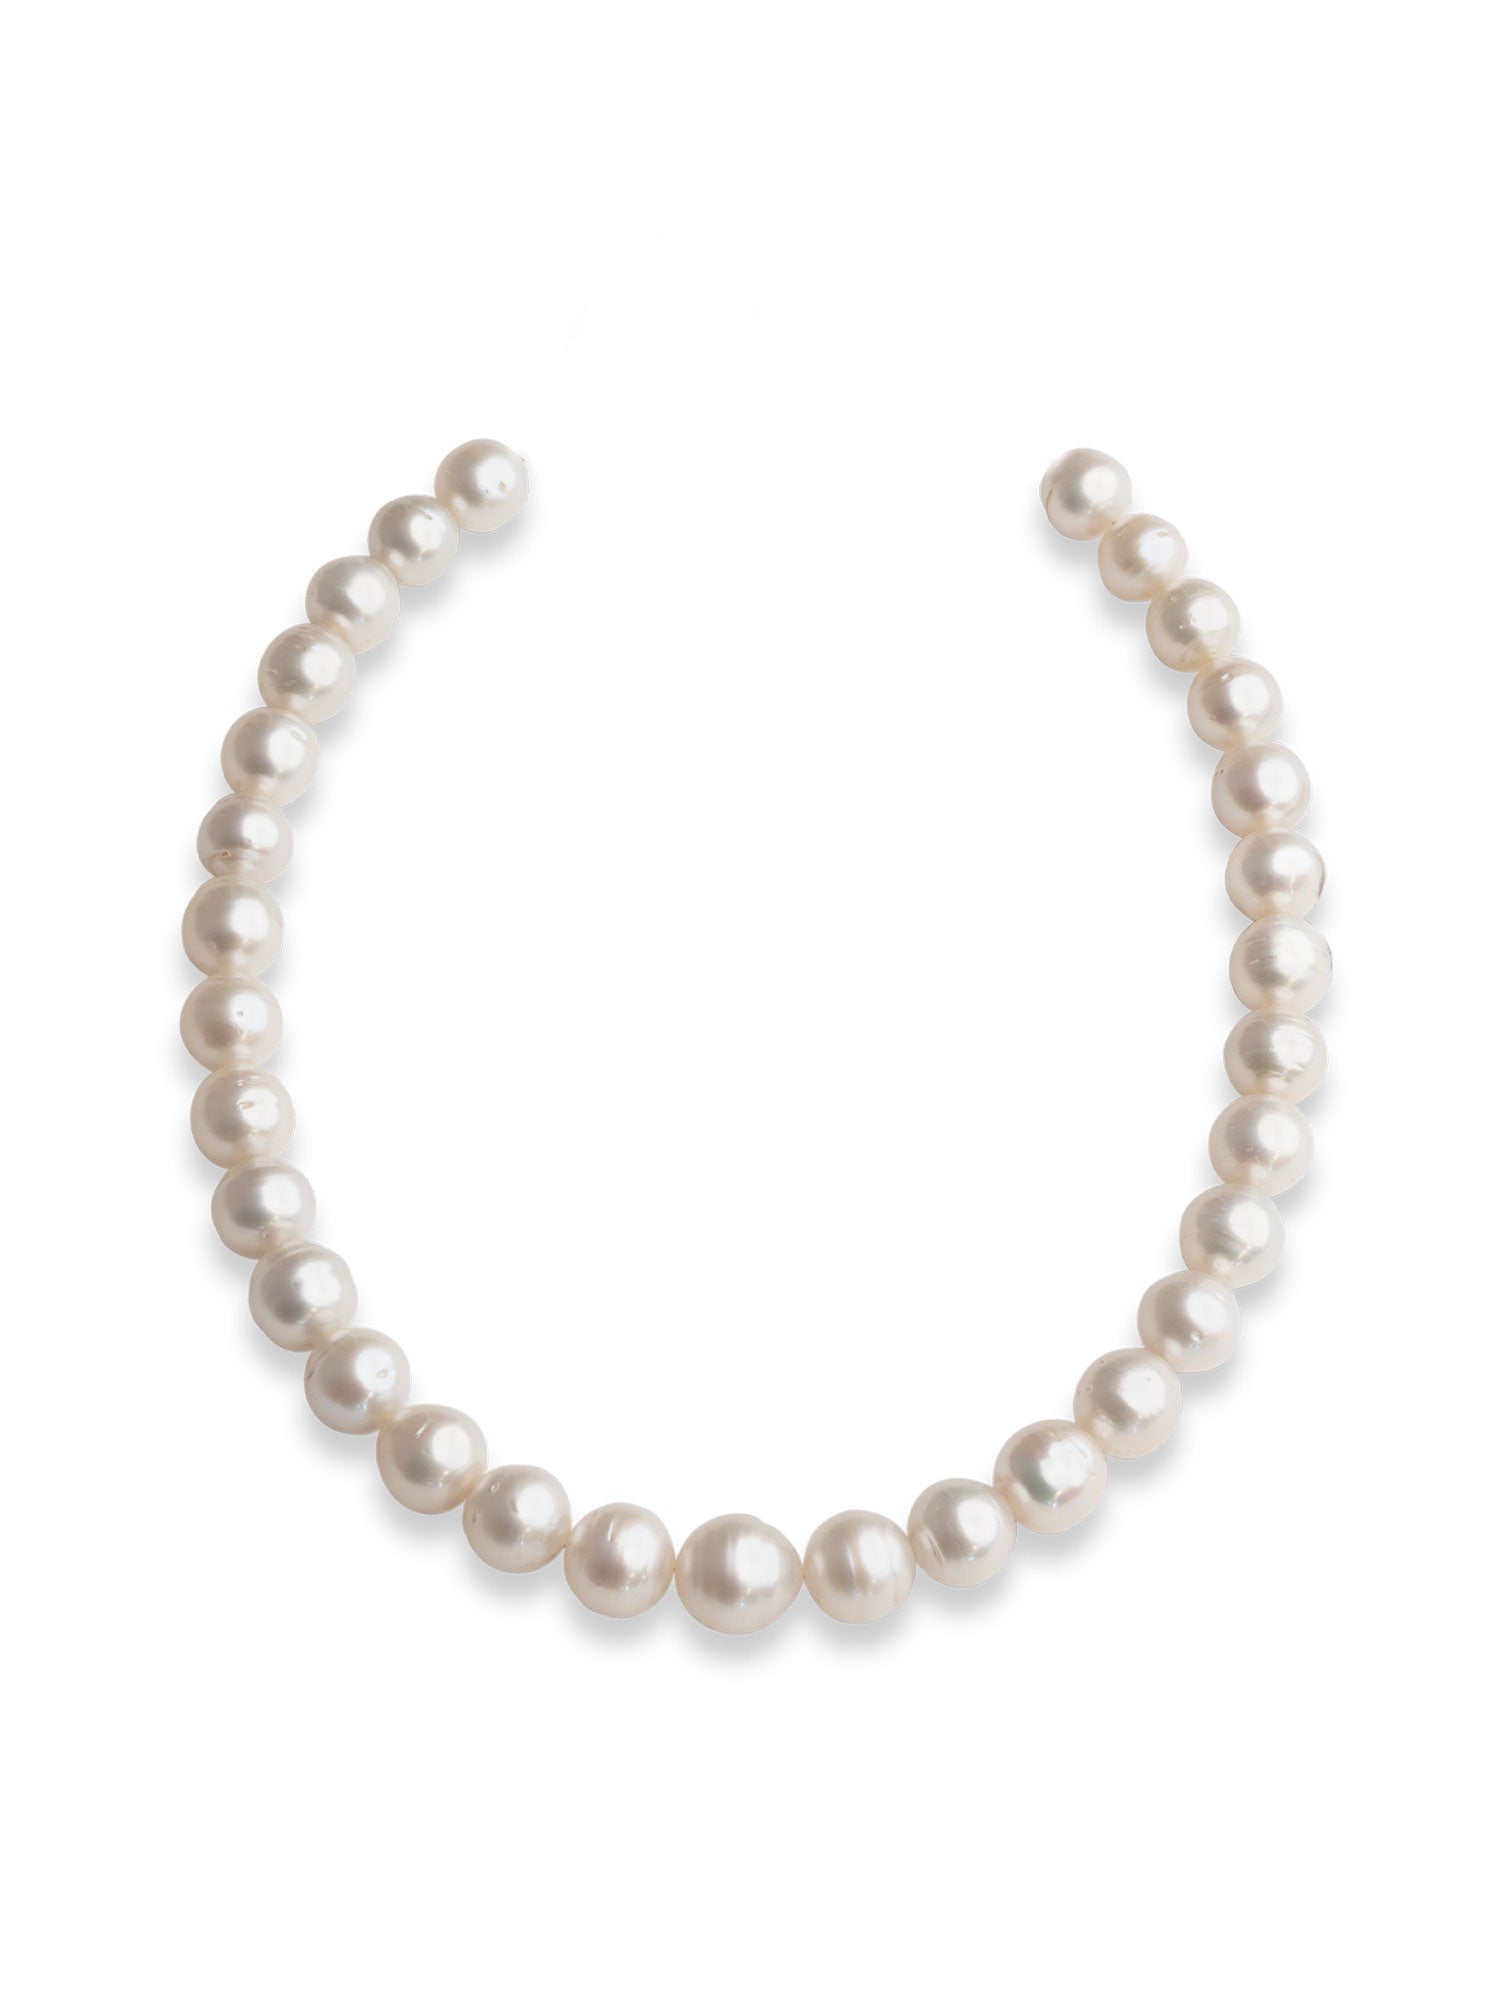 Collar de Perlas Cultivadas Australianas Semi Barrocas de 12 - 15 mm AA+ | 45 cm